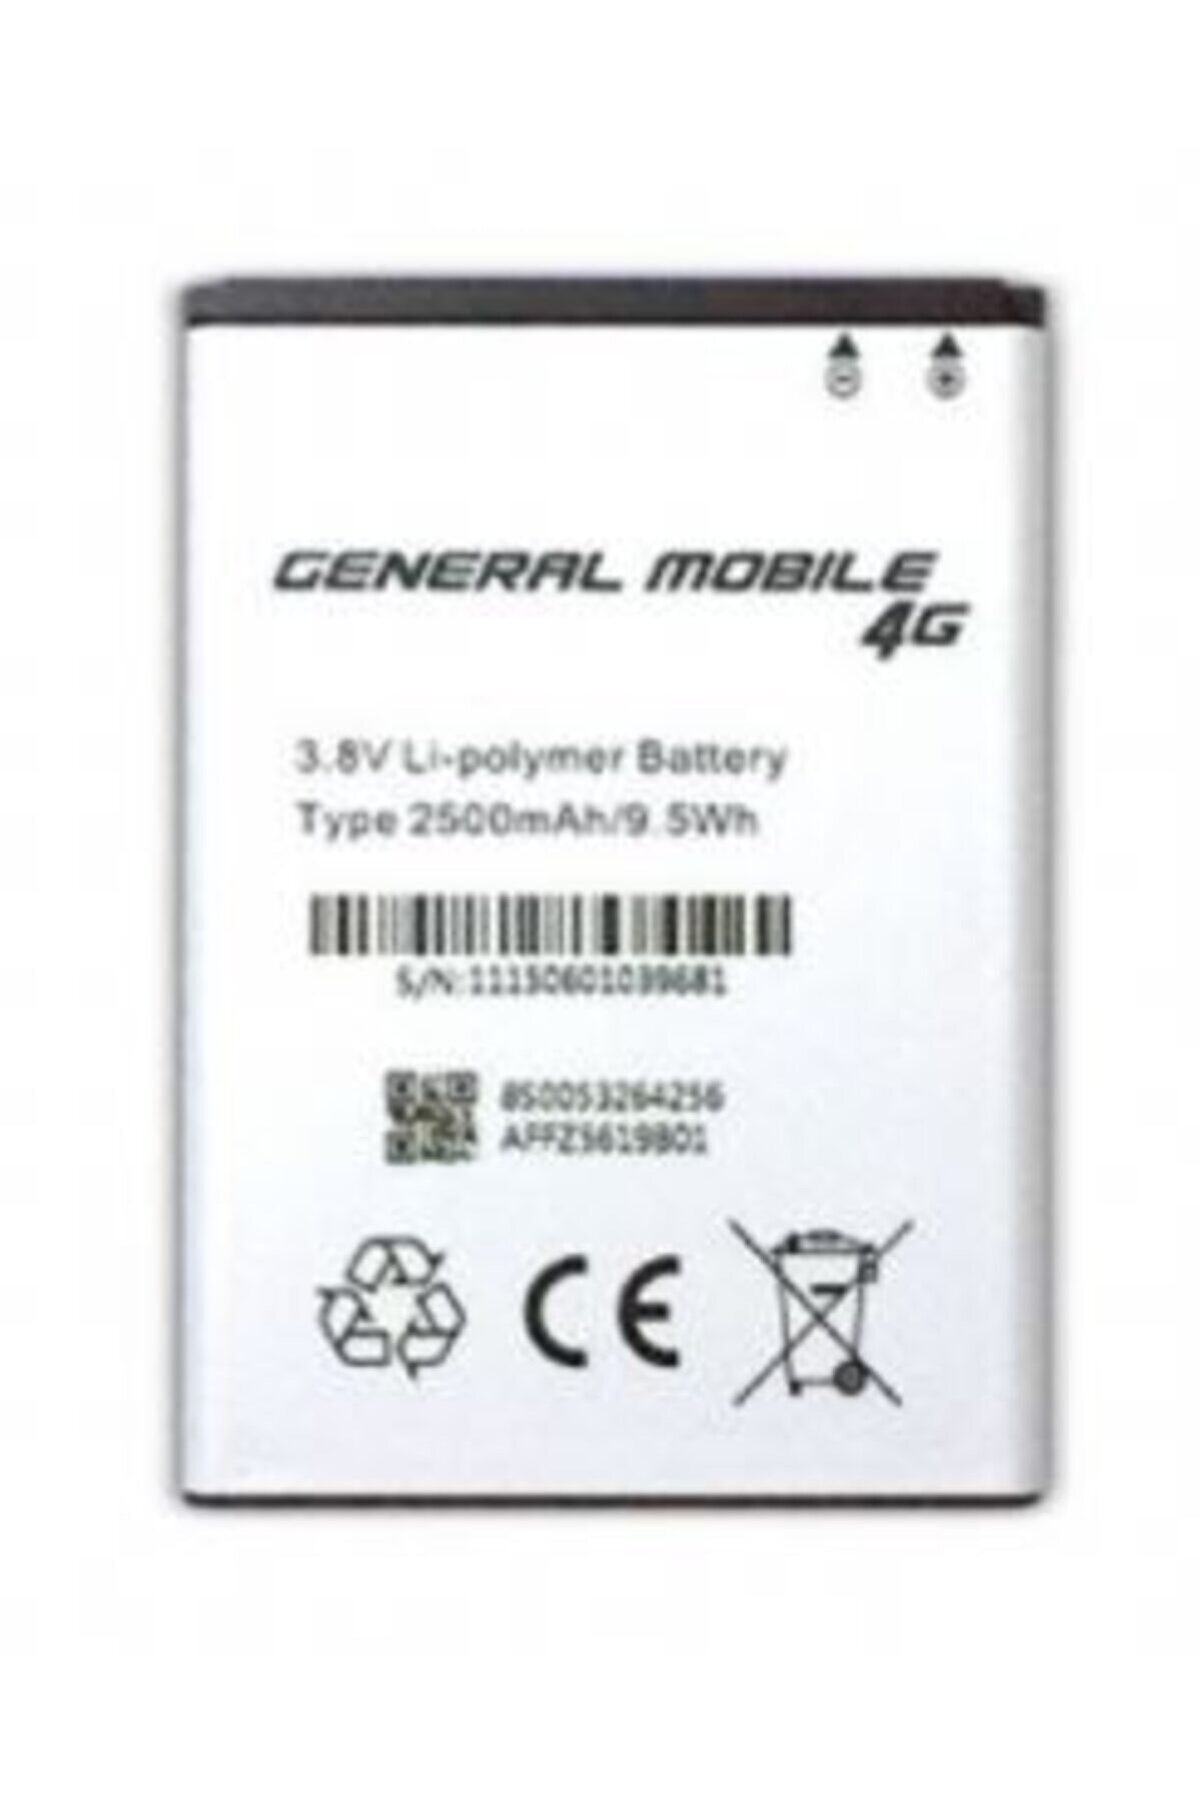 General Mobile Gm 4g Batarya